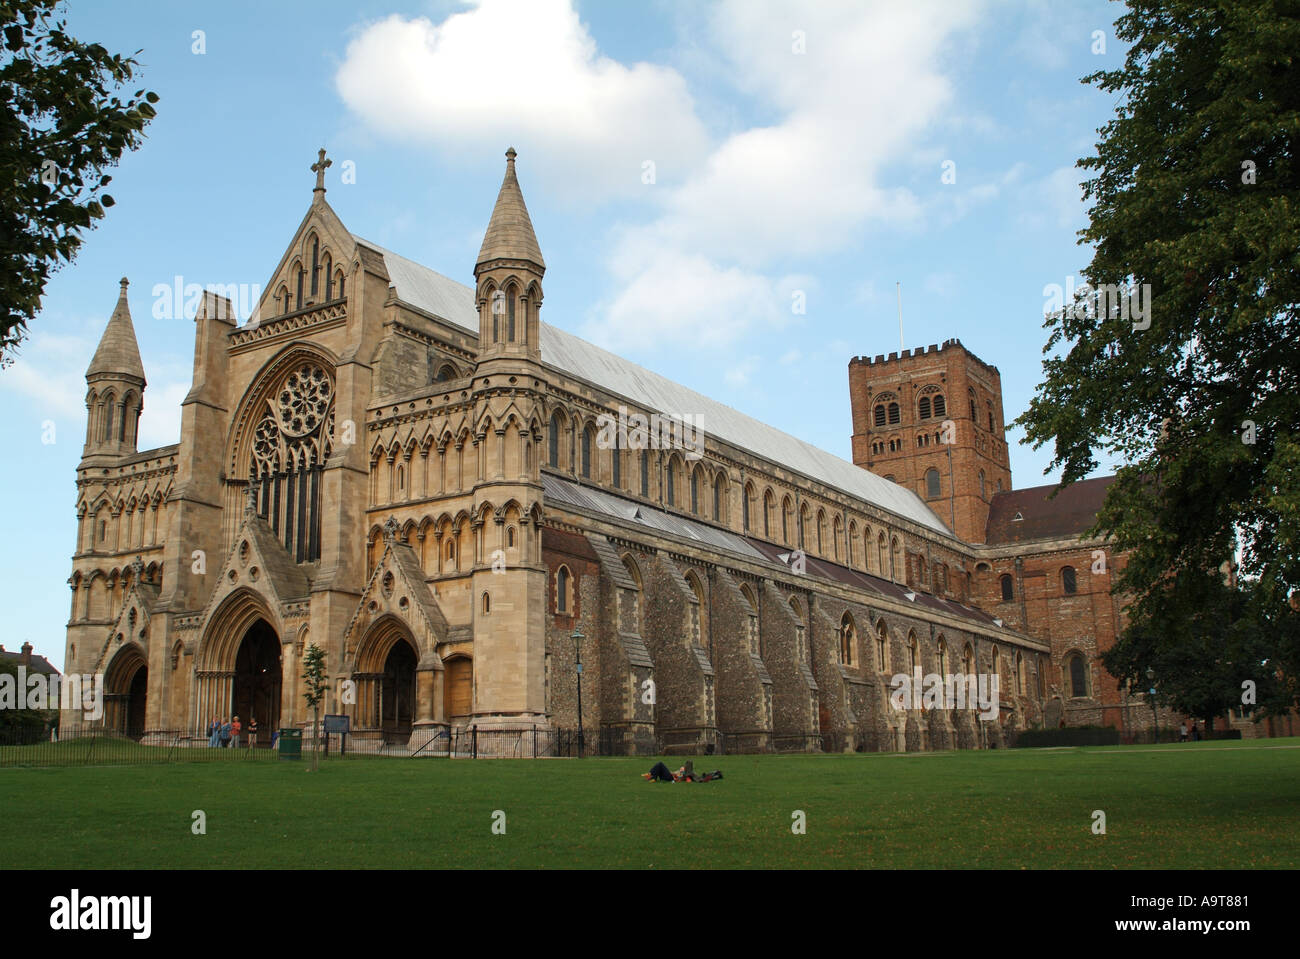 L'extrémité ouest de la cathédrale et église abbatiale de St Alban, St Albans, Hertfordshire, England, UK. Banque D'Images